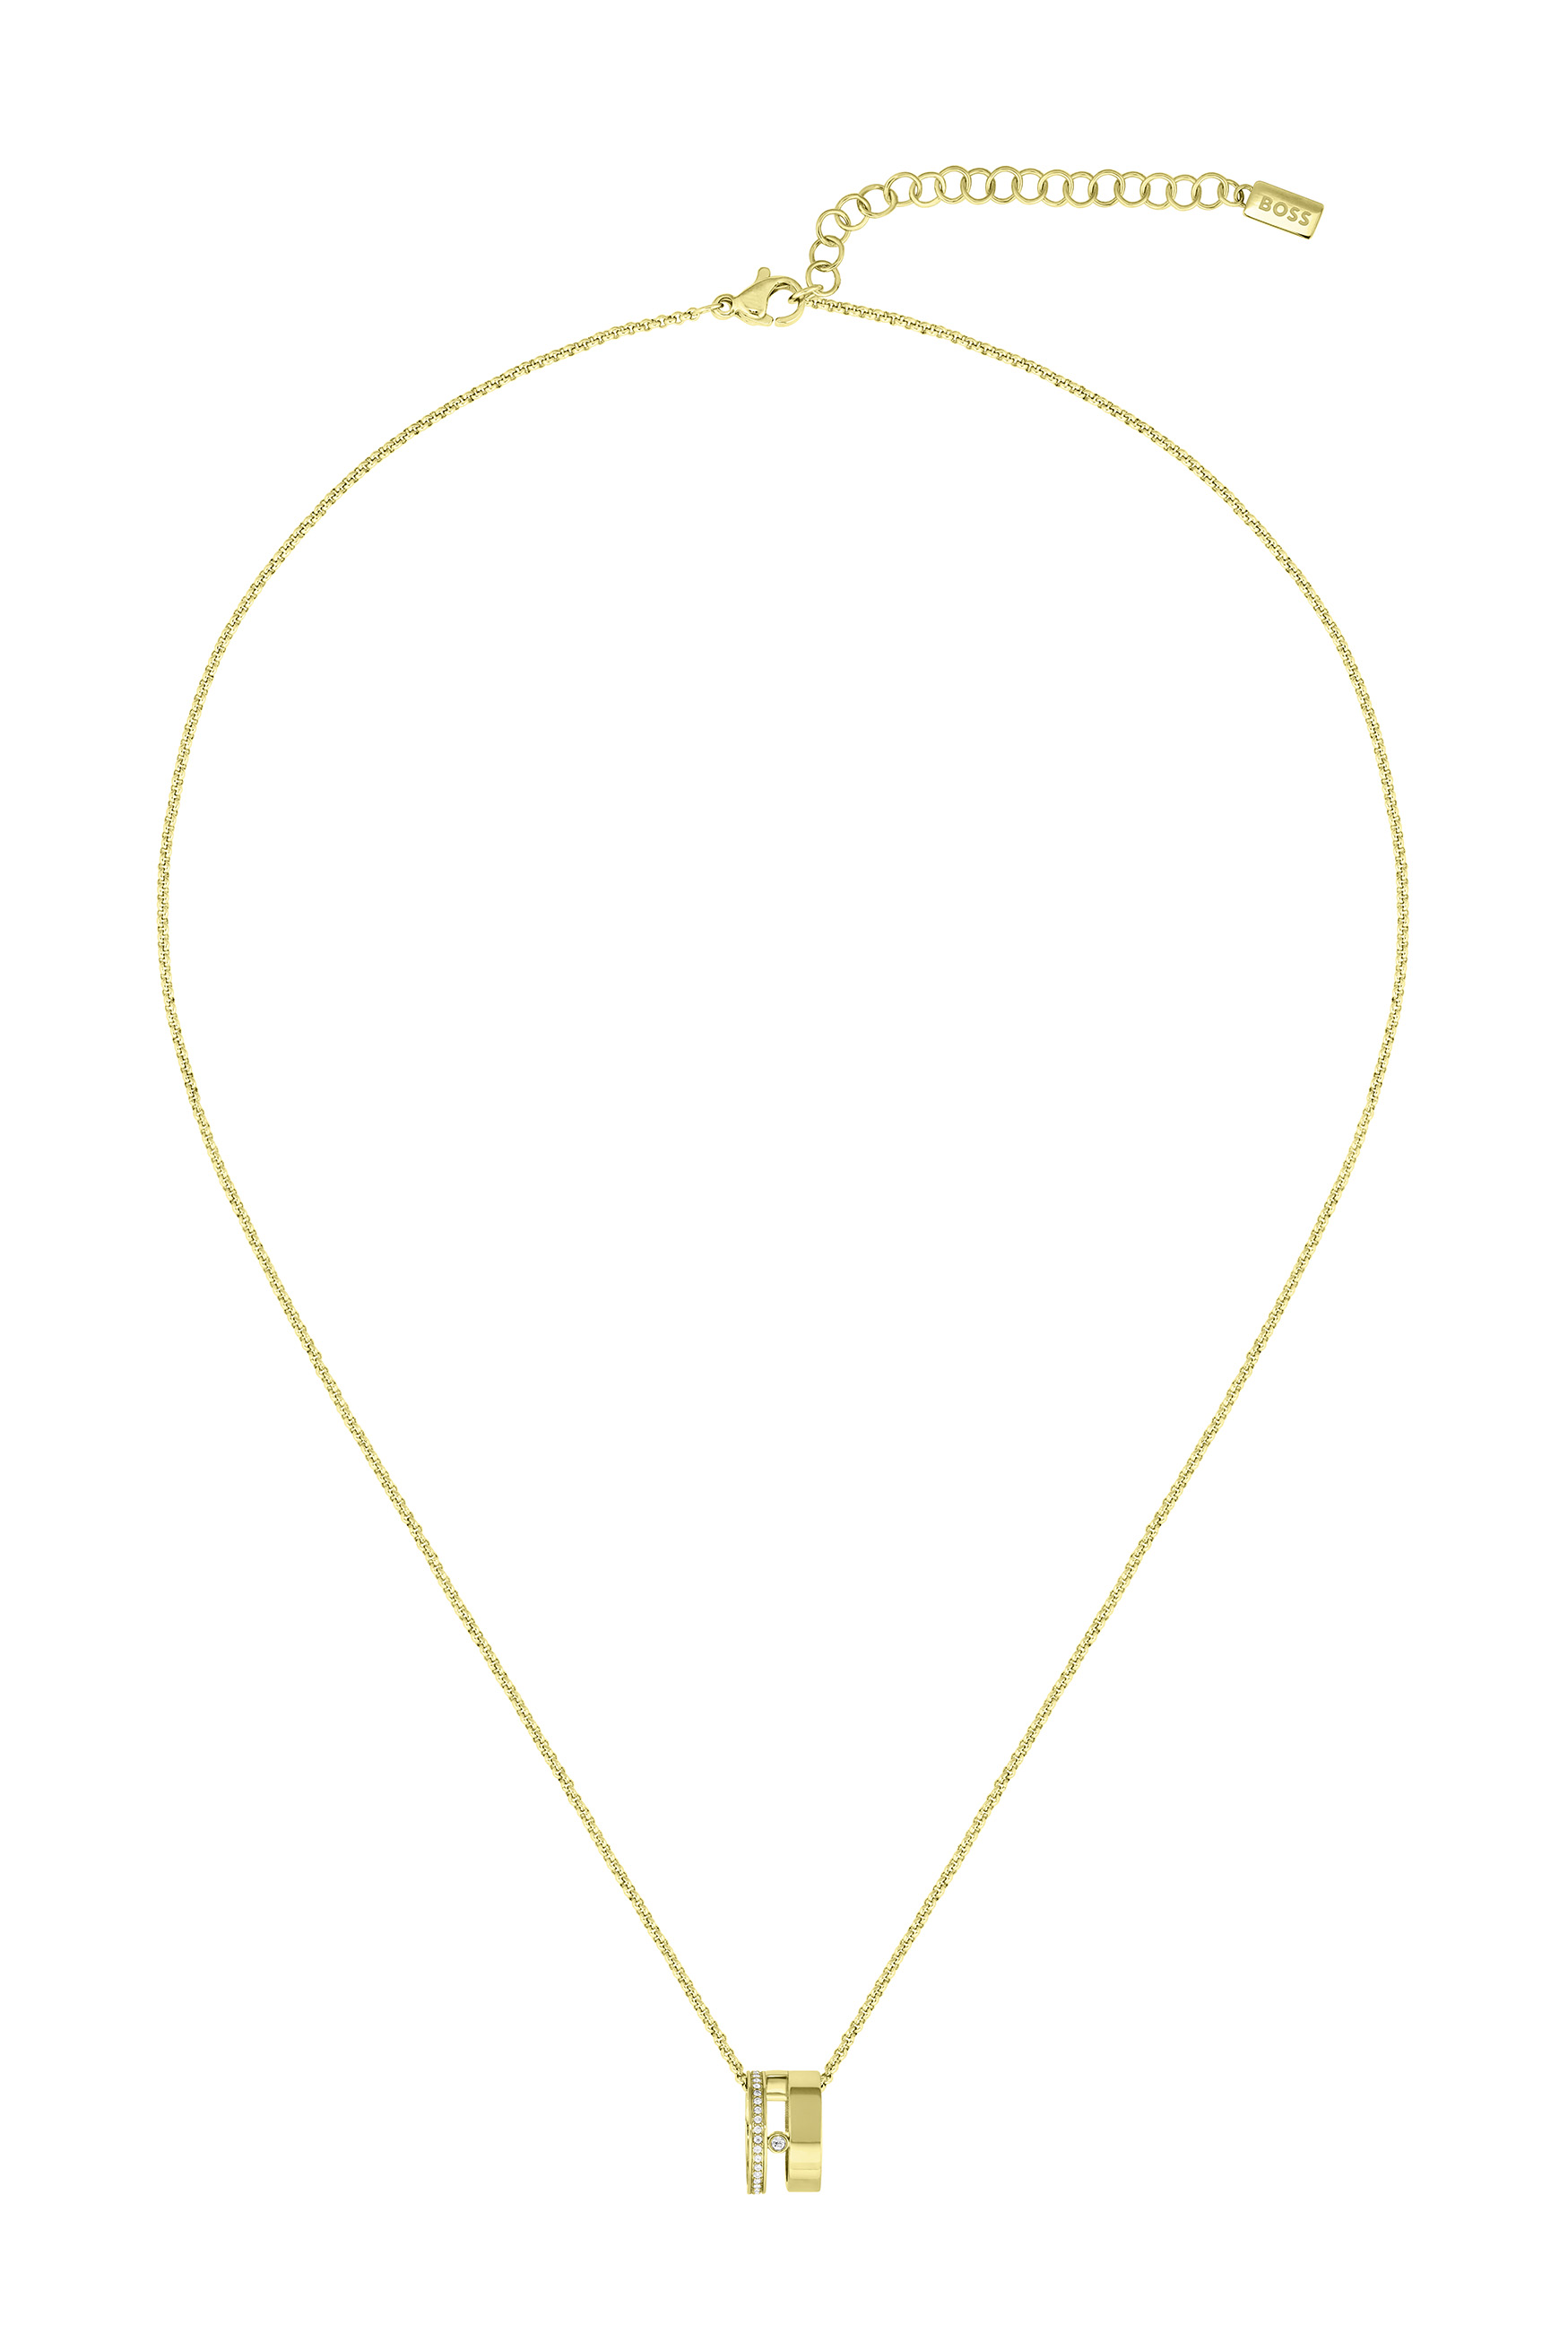 Hugo Boss Módny pozlátený náhrdelník s kryštálmi Lyssa 1580347.